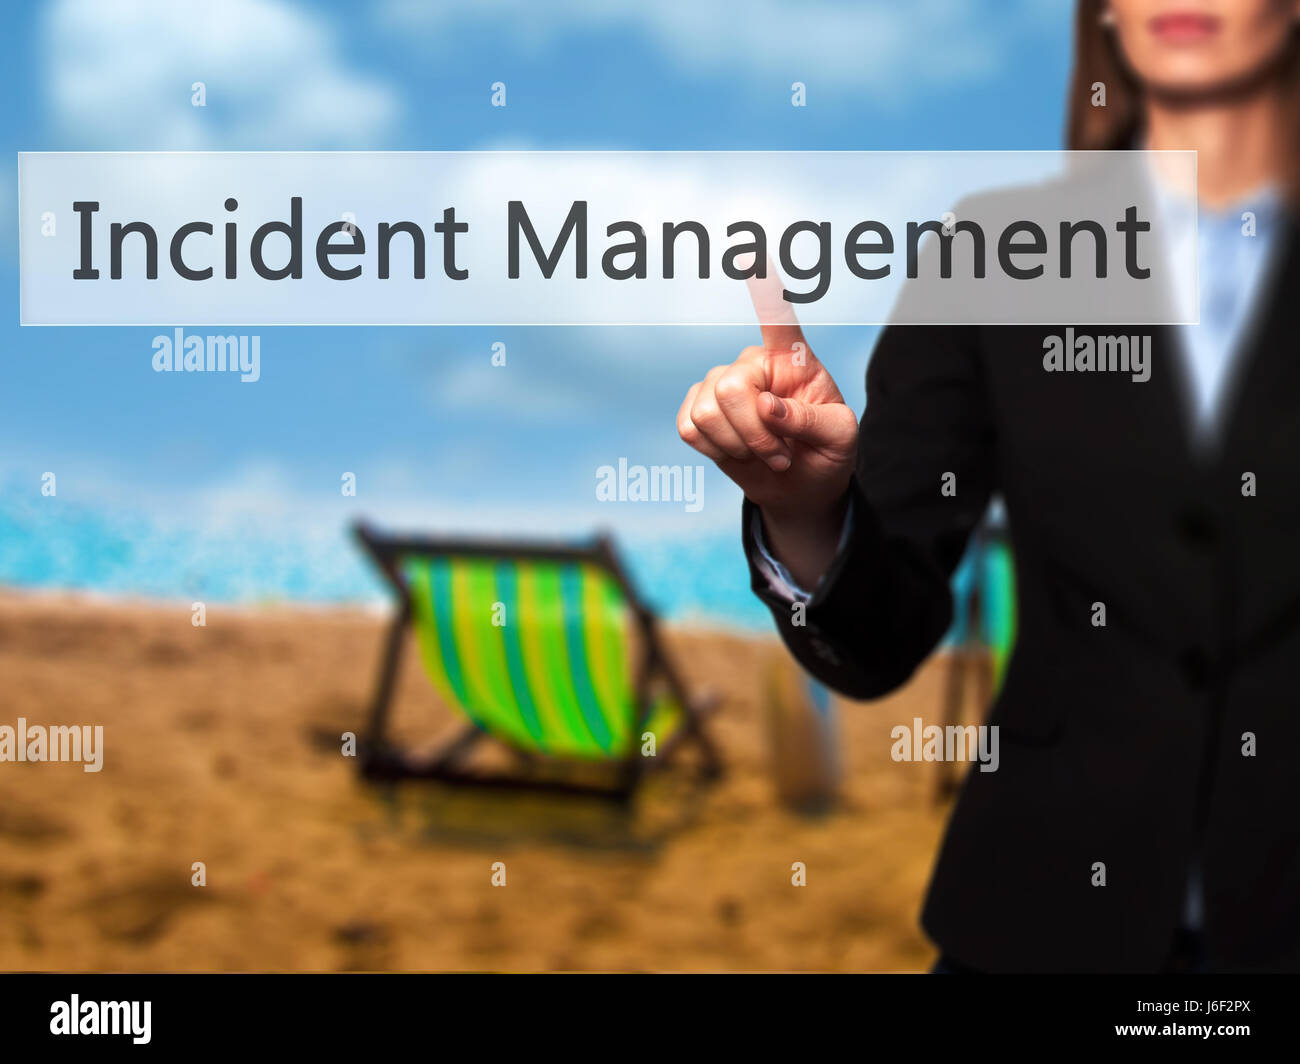 Incident Management - Imprenditrice mano premendo il pulsante sul touch screen interfaccia. Business, tecnologia internet concetto. Stock Photo Foto Stock